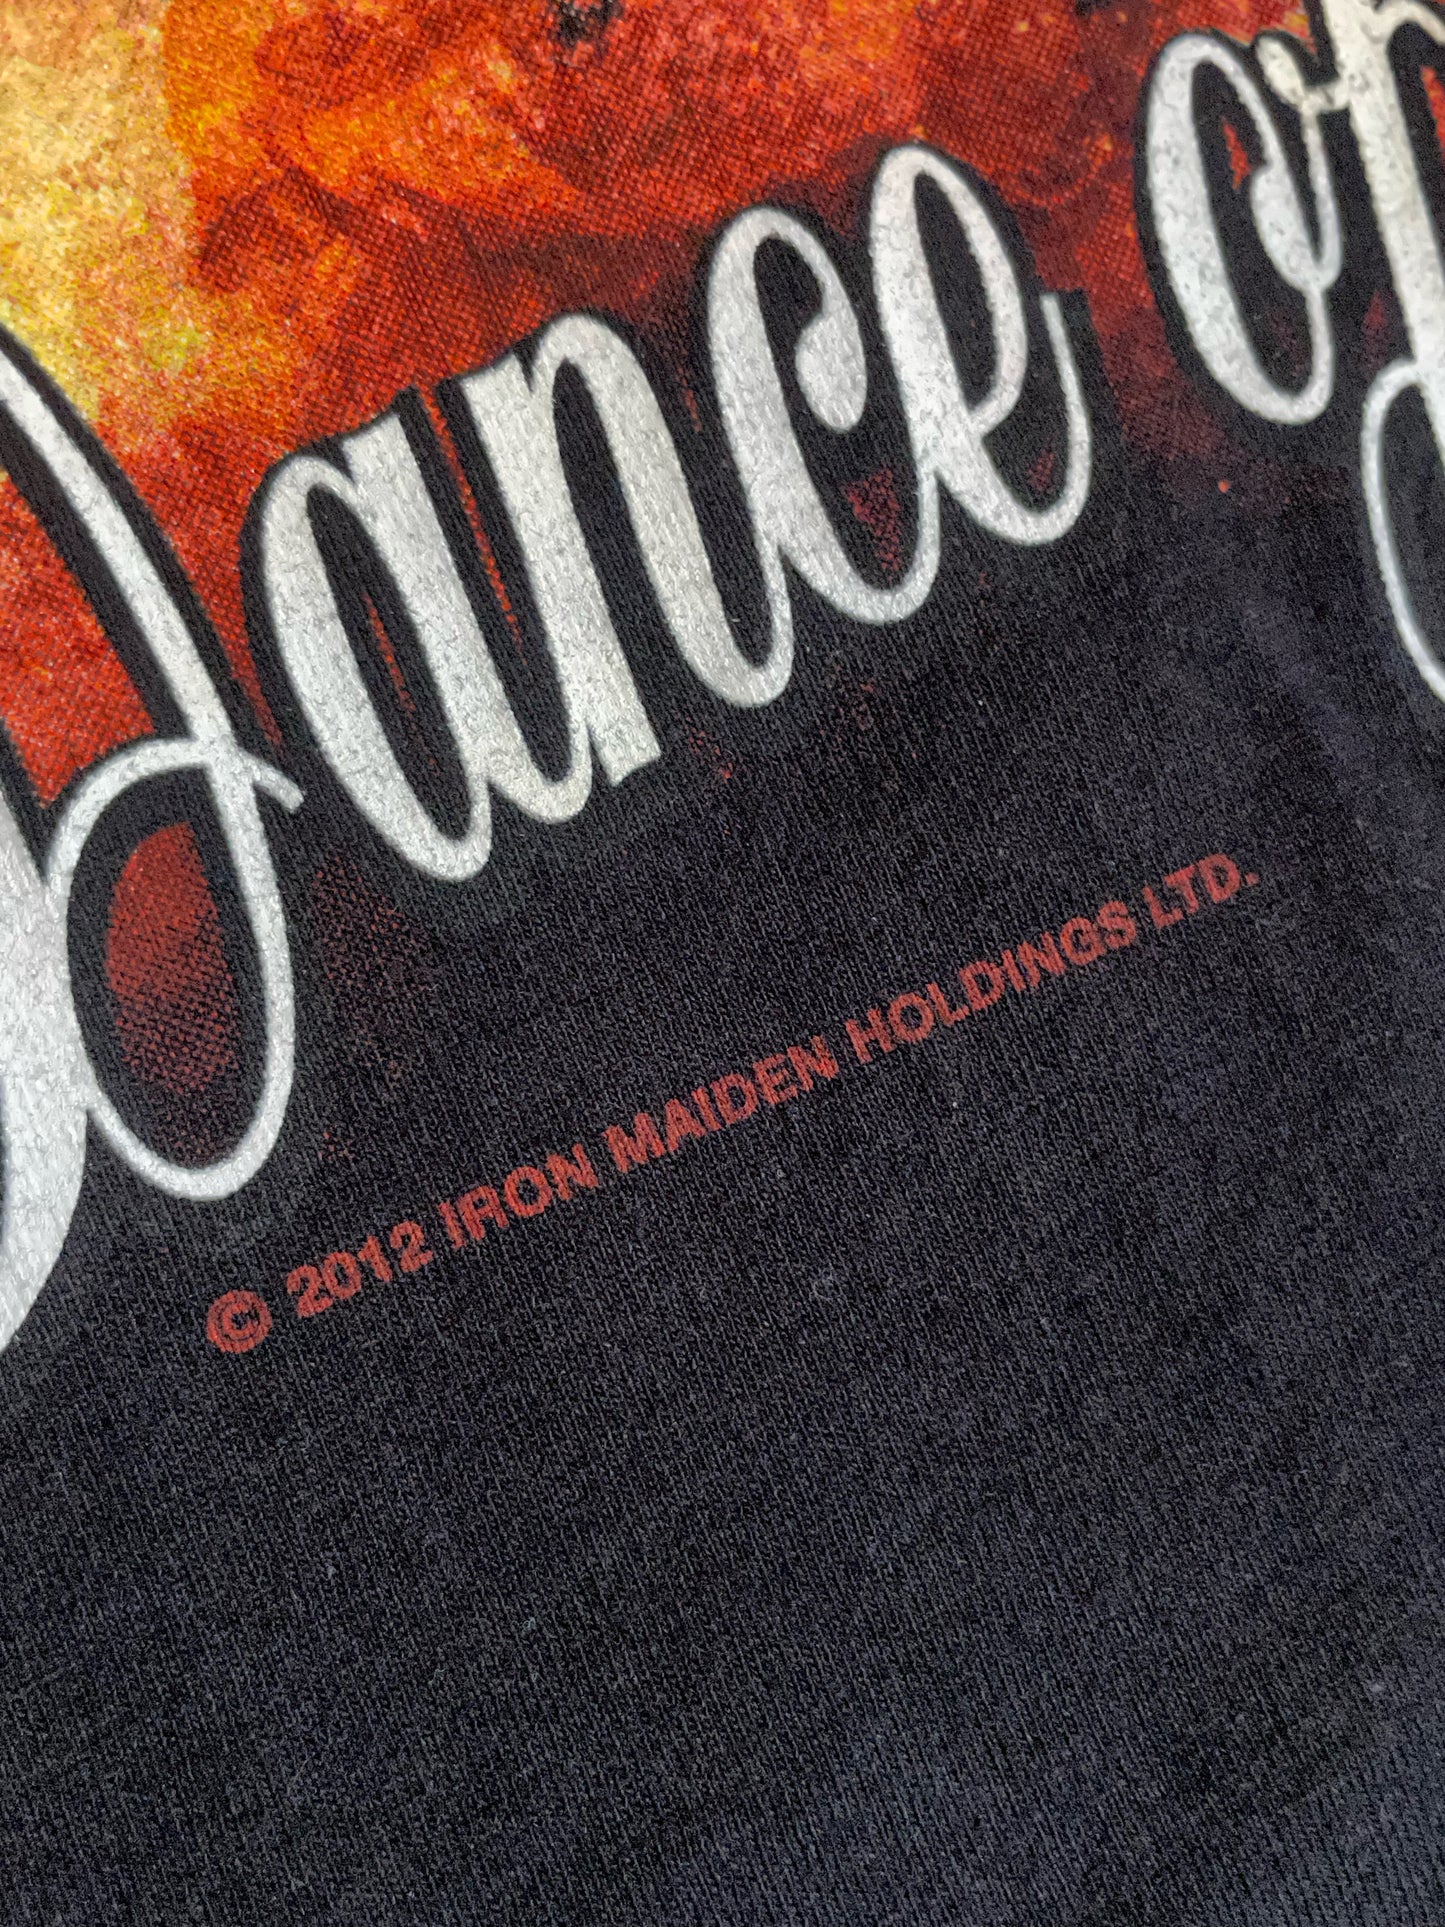 IRON MAIDEN "DANCE OF DEATH" 2012 MUSIC BAND T-SHIRT  SZ: XXL